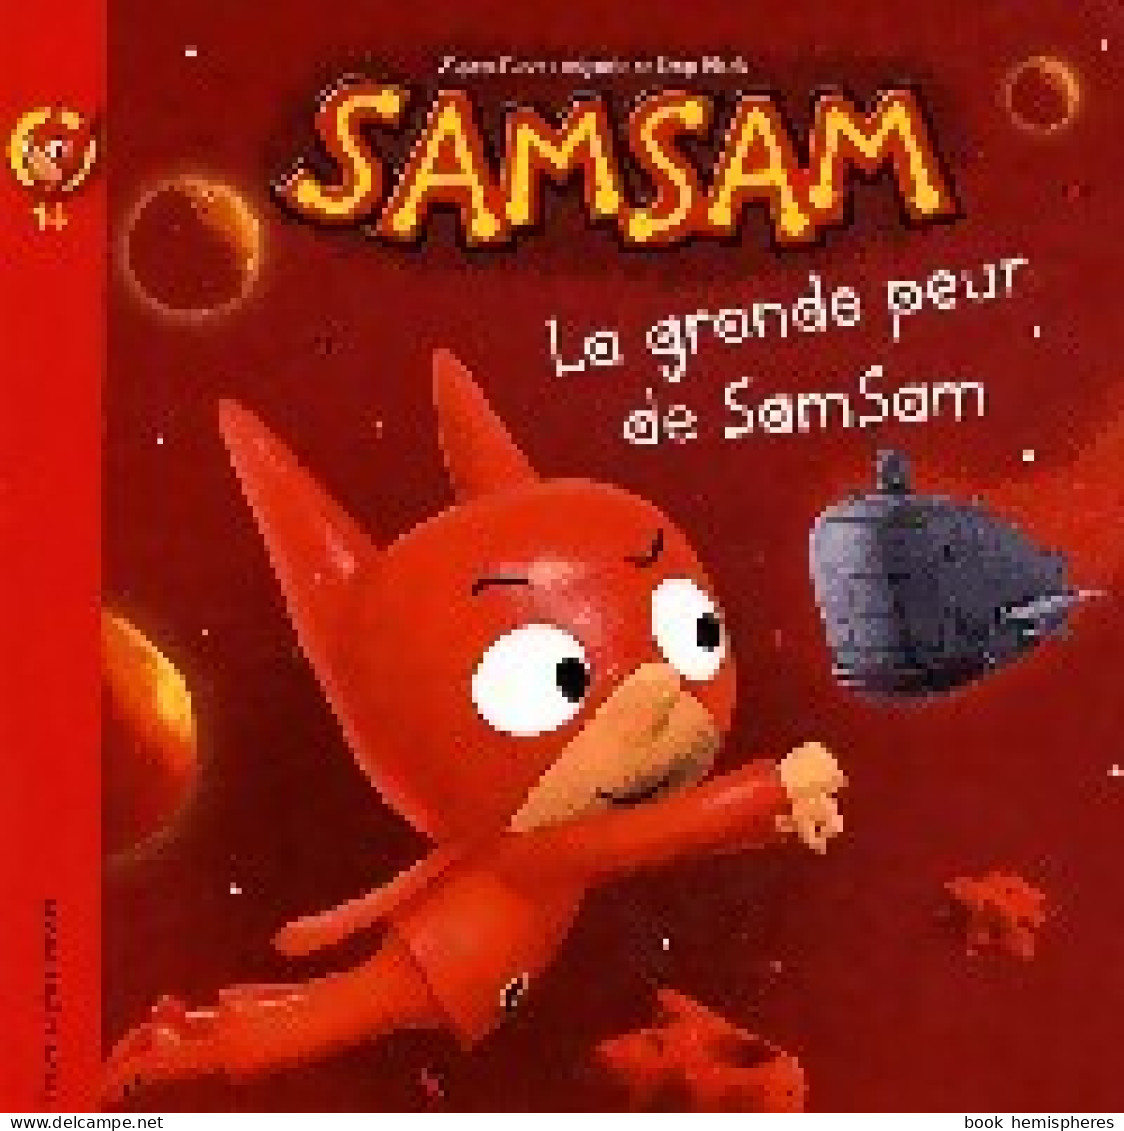 La Grande Peur De SamSam (2009) De Serge Bloch - Autres & Non Classés